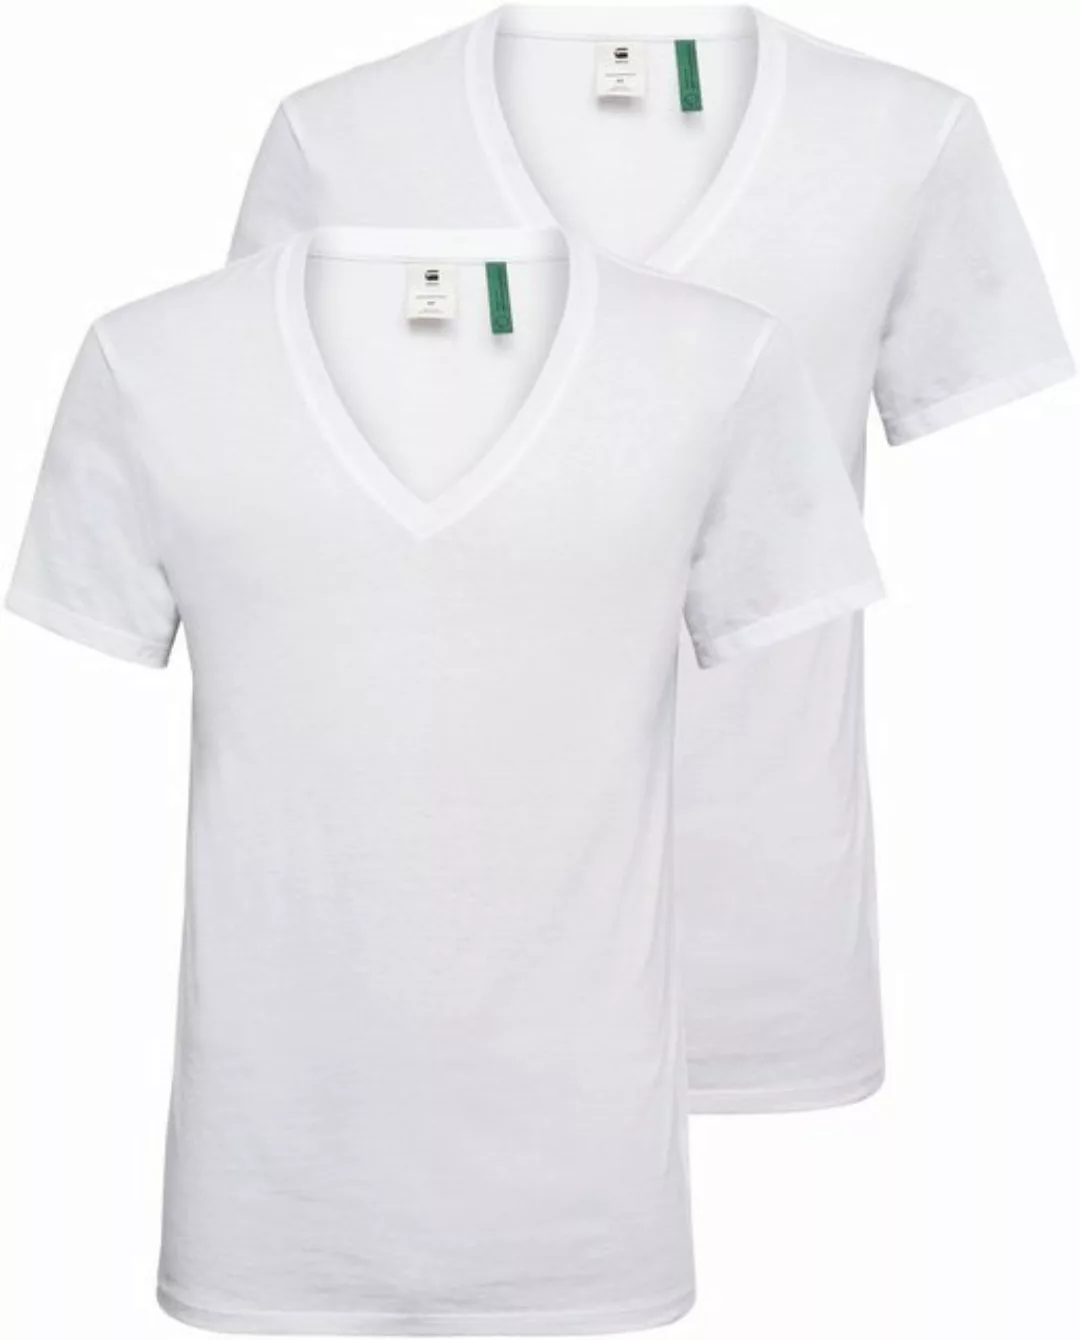 G-star Base Heather Ribbed V-neck Ny Jersey 2 Units Kurzarm T-shirt S White günstig online kaufen